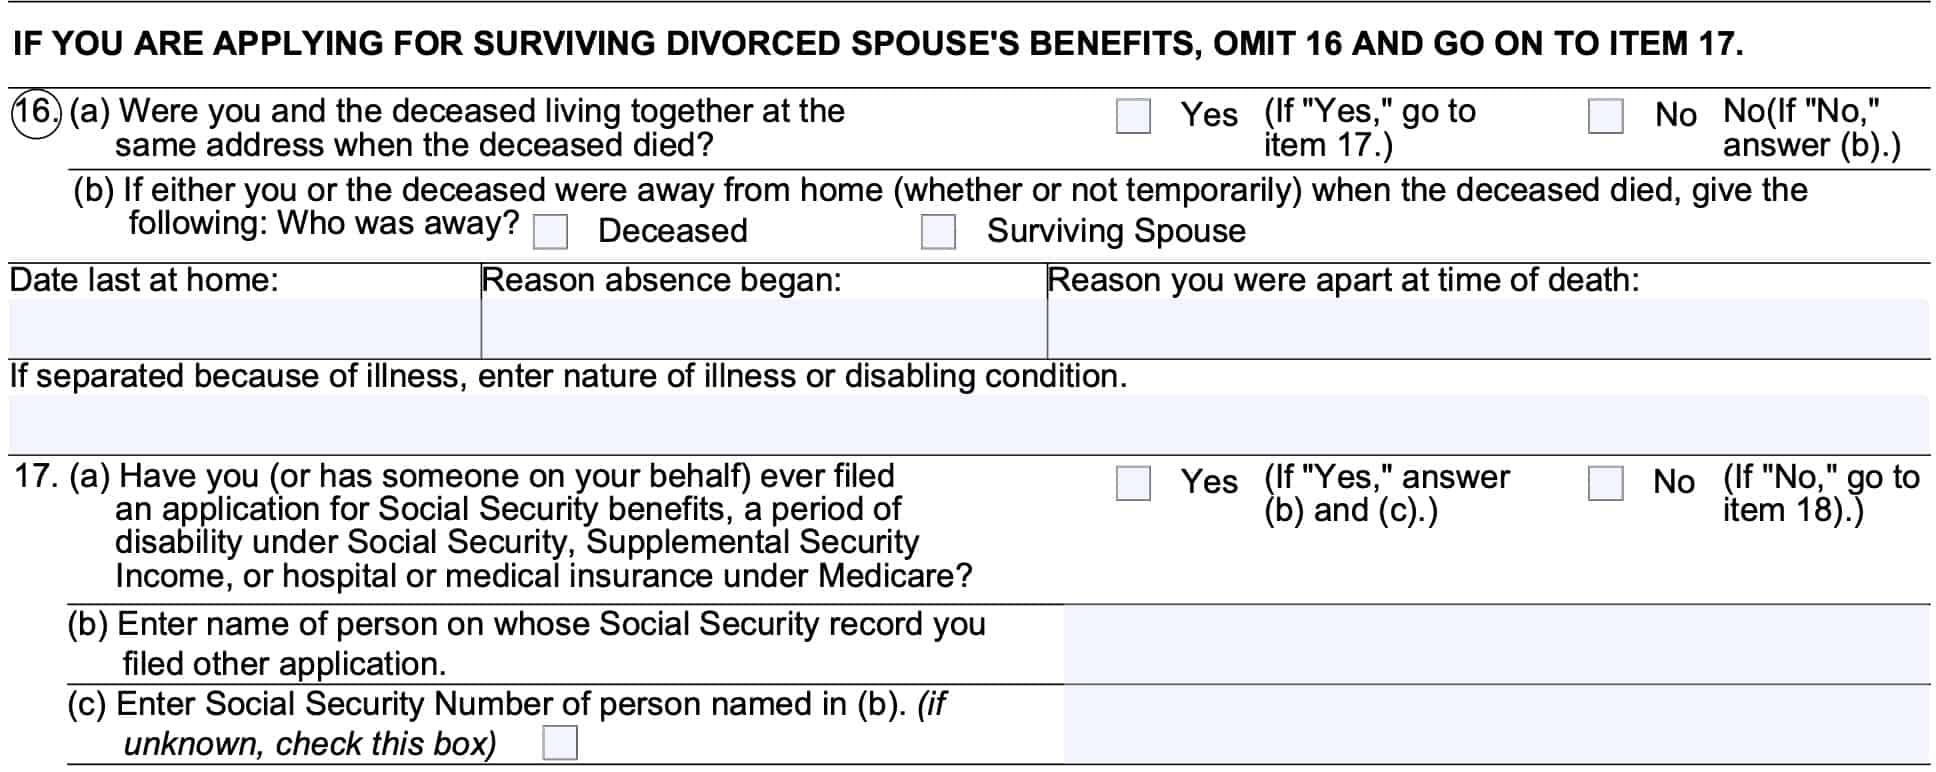 form ssa 10 line 16 discusses cohabitation while line 17 asks about previous benefits